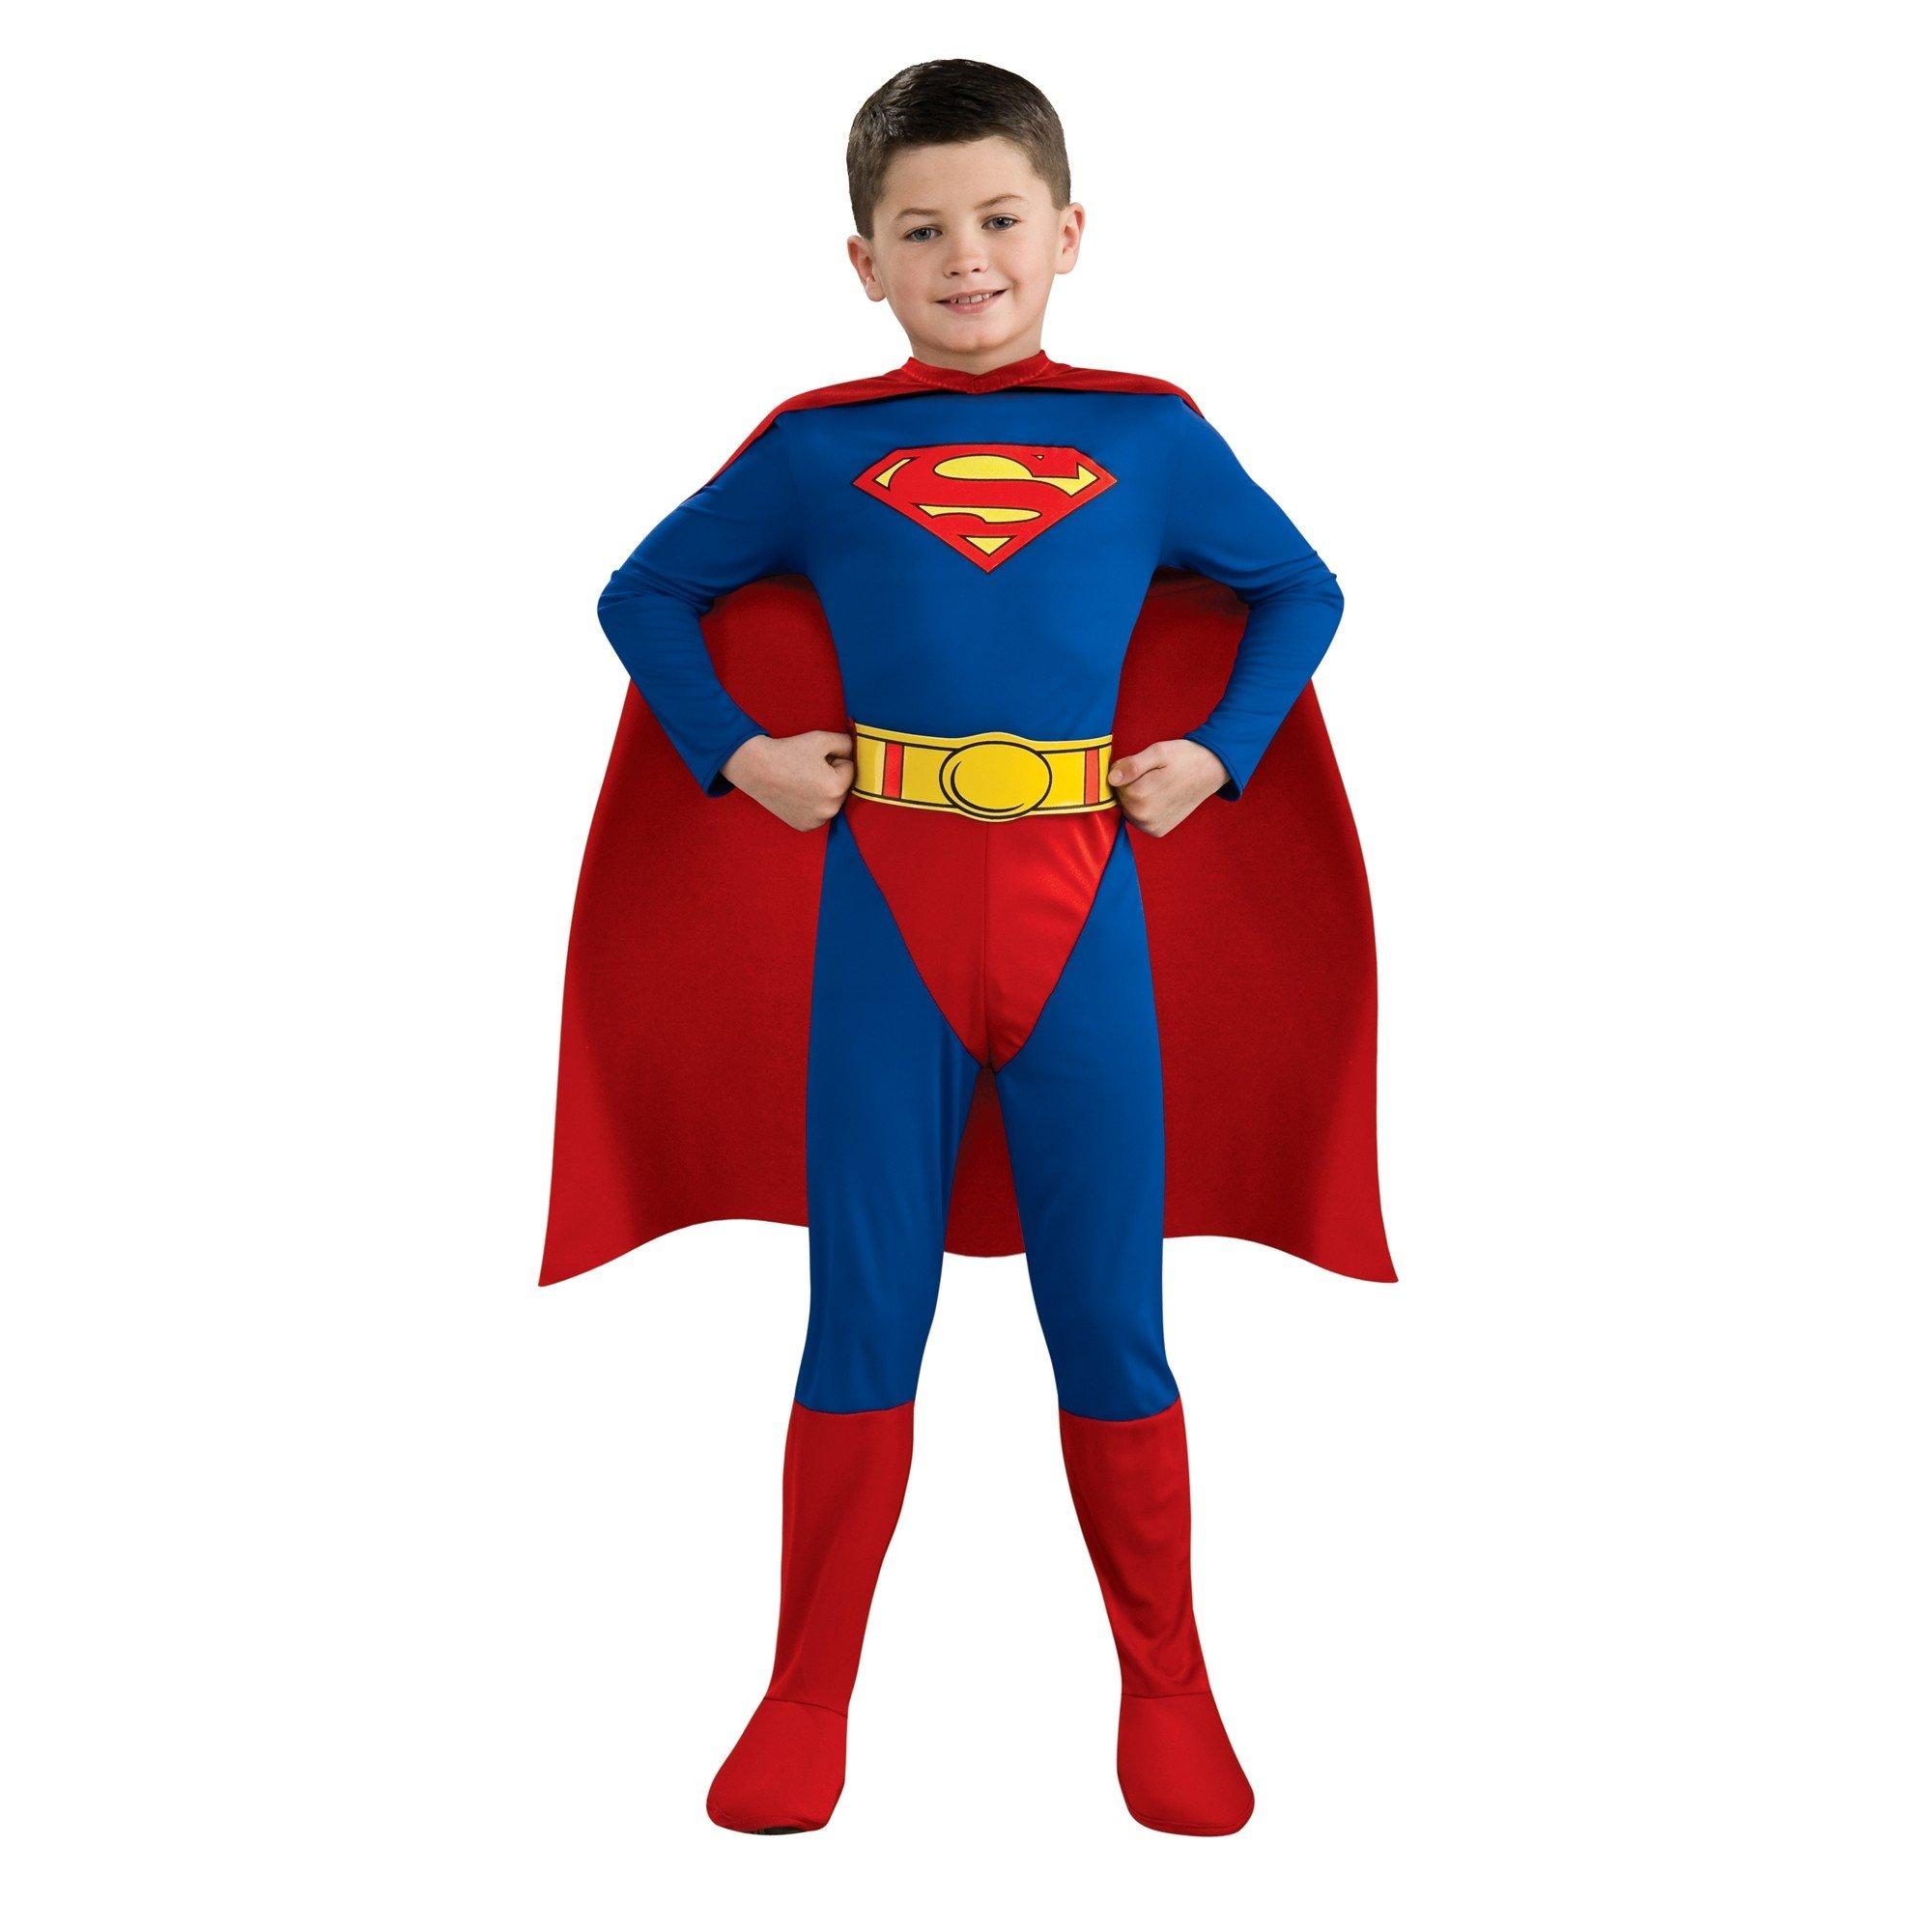 SUPERMAN  Déguisement JUSTICE LEAGUE Enfant 